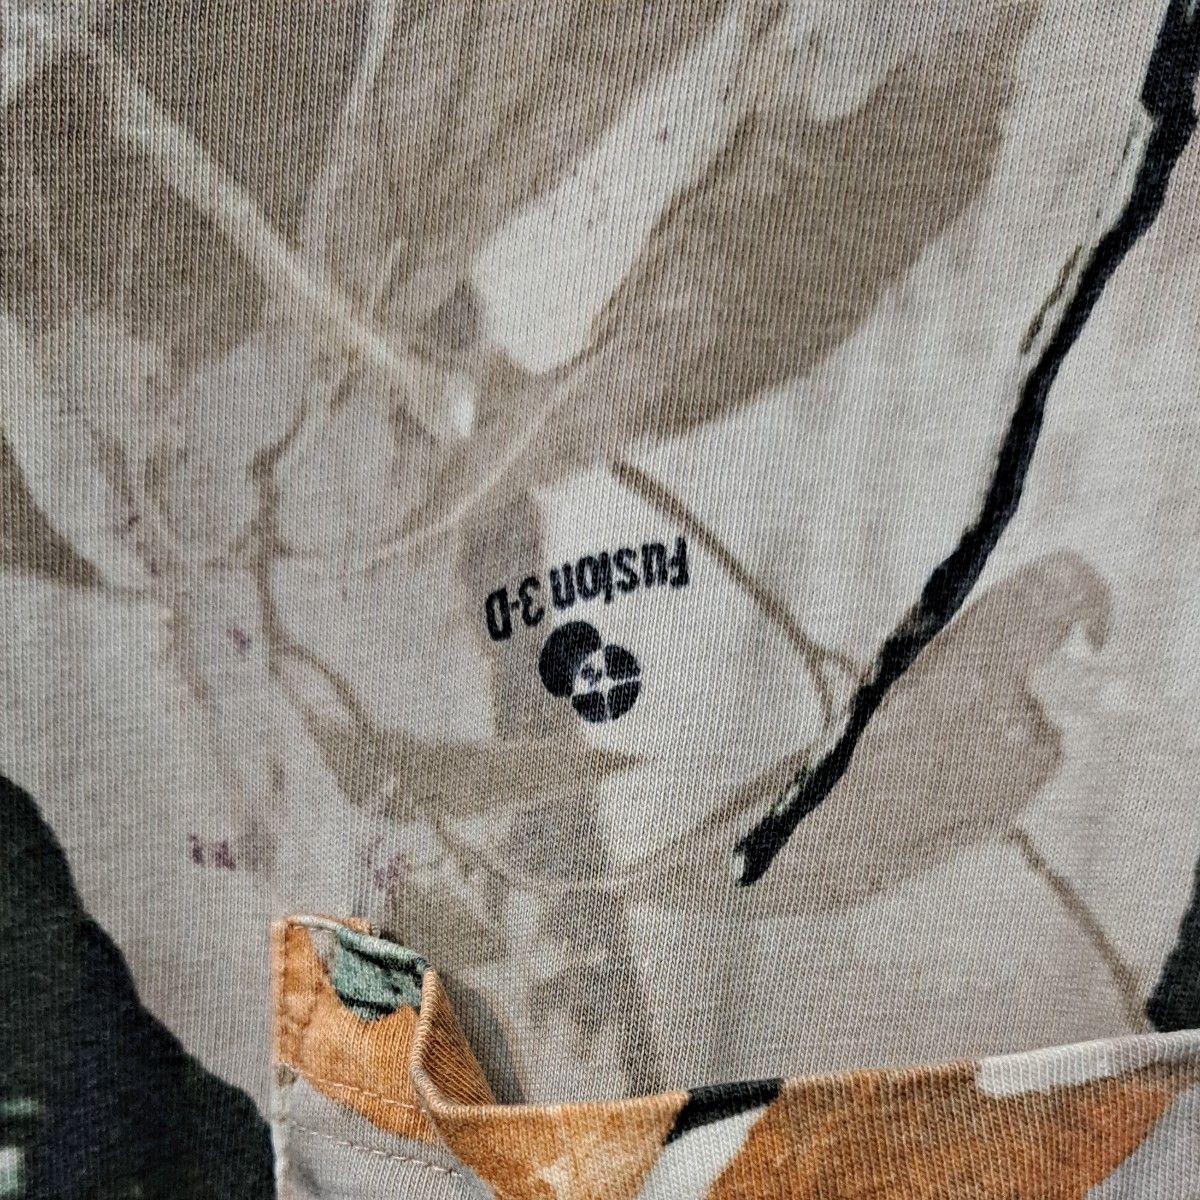 Outfitters Ridge 胸ポケット リアルツリー シャツ 迷彩 カモフラージュ ビッグサイズ ミリタリー サバゲー 